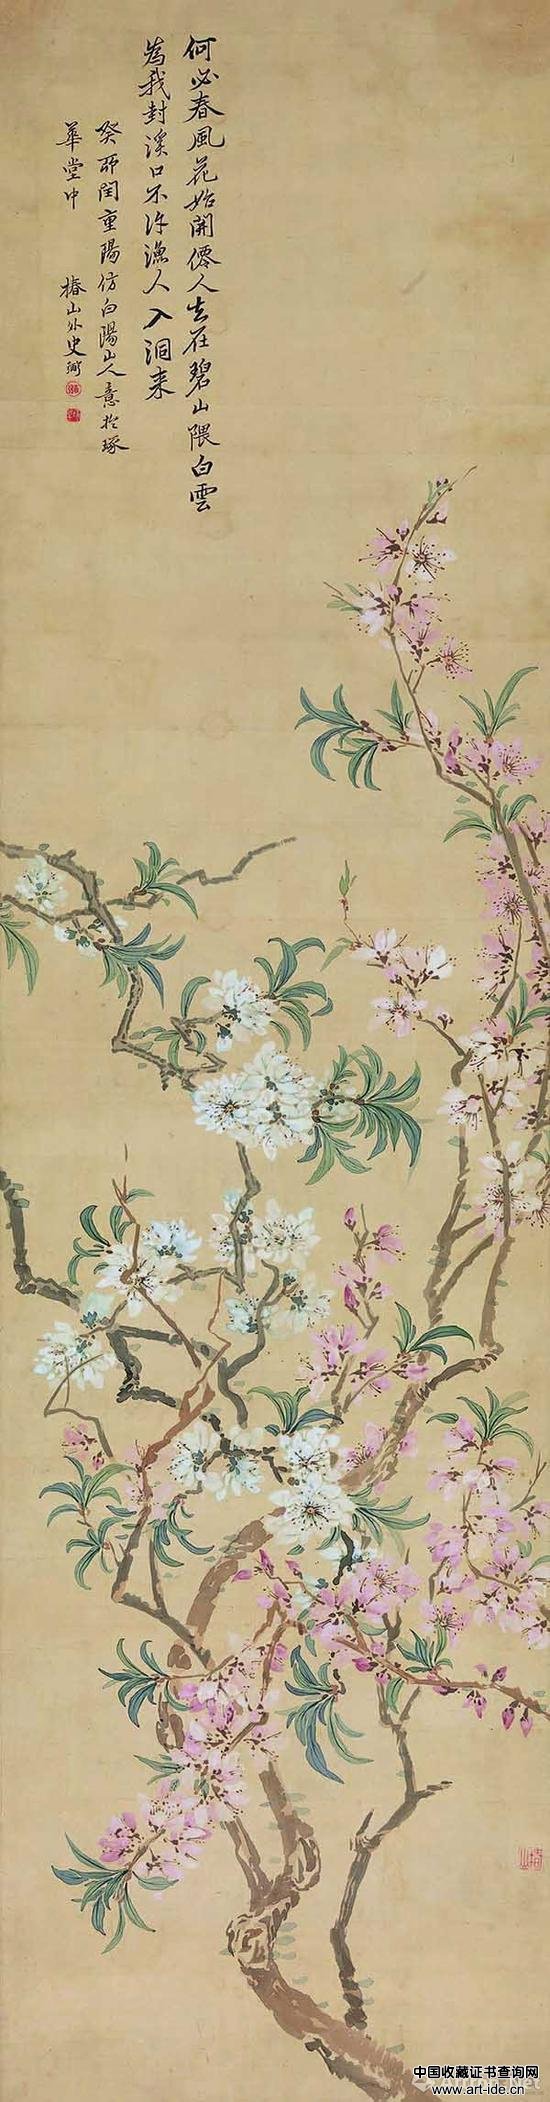 日本 椿椿山 花卉条屏 129.9cmx28.8cm 纸本设色